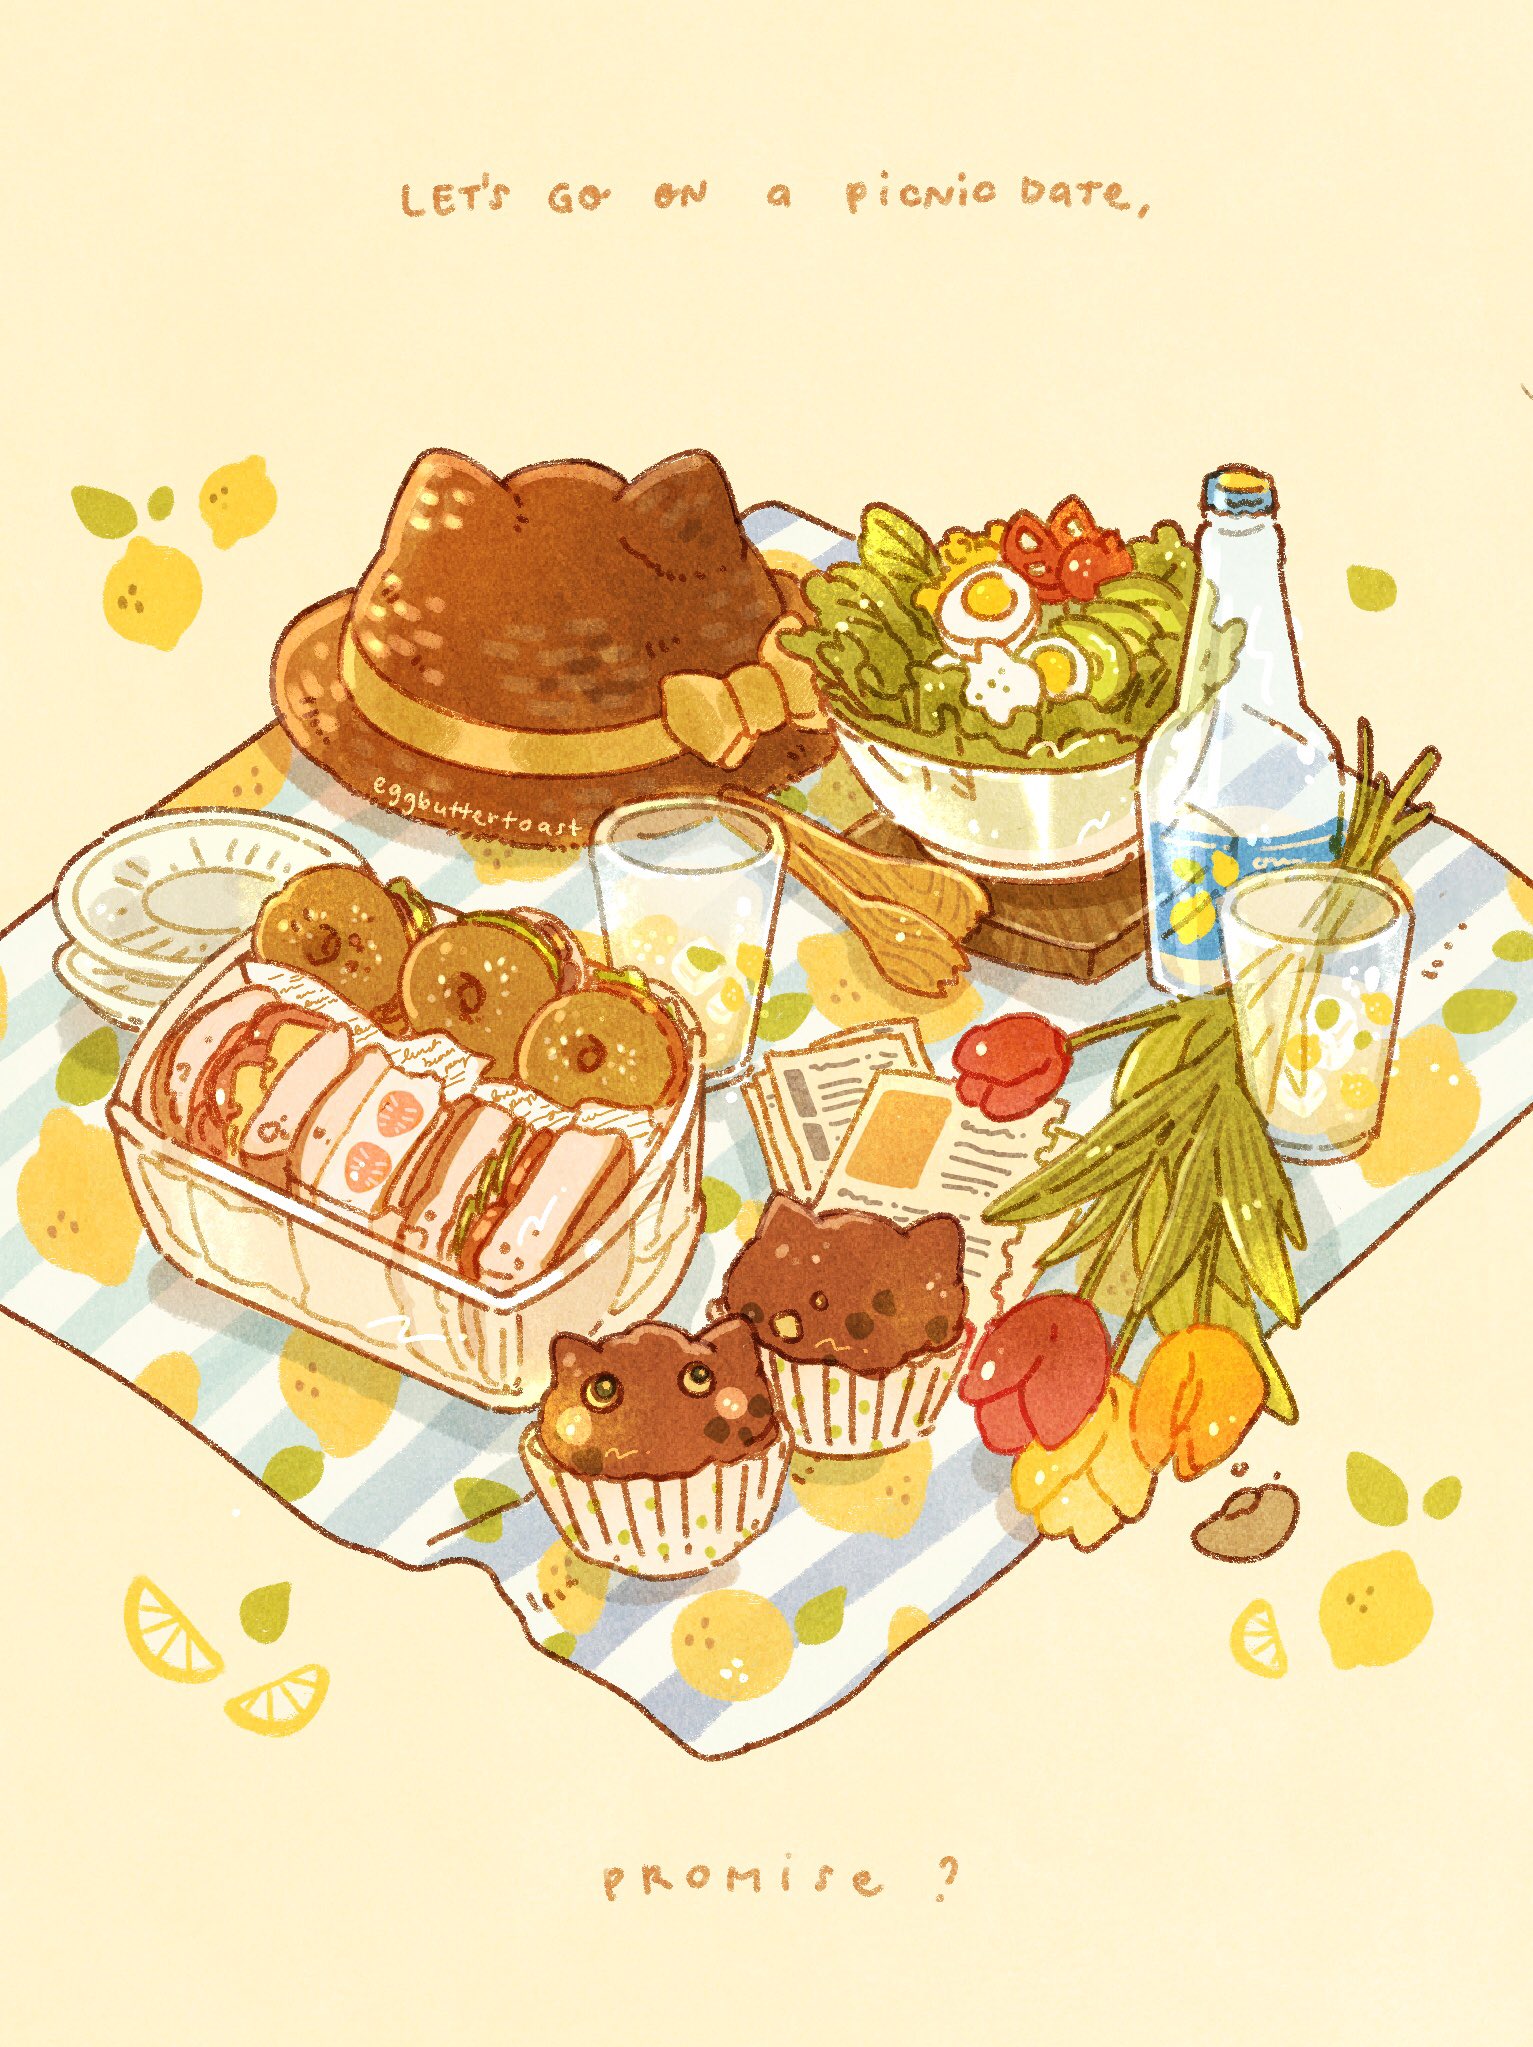 Hình ảnh đồ ăn picnic dễ thương